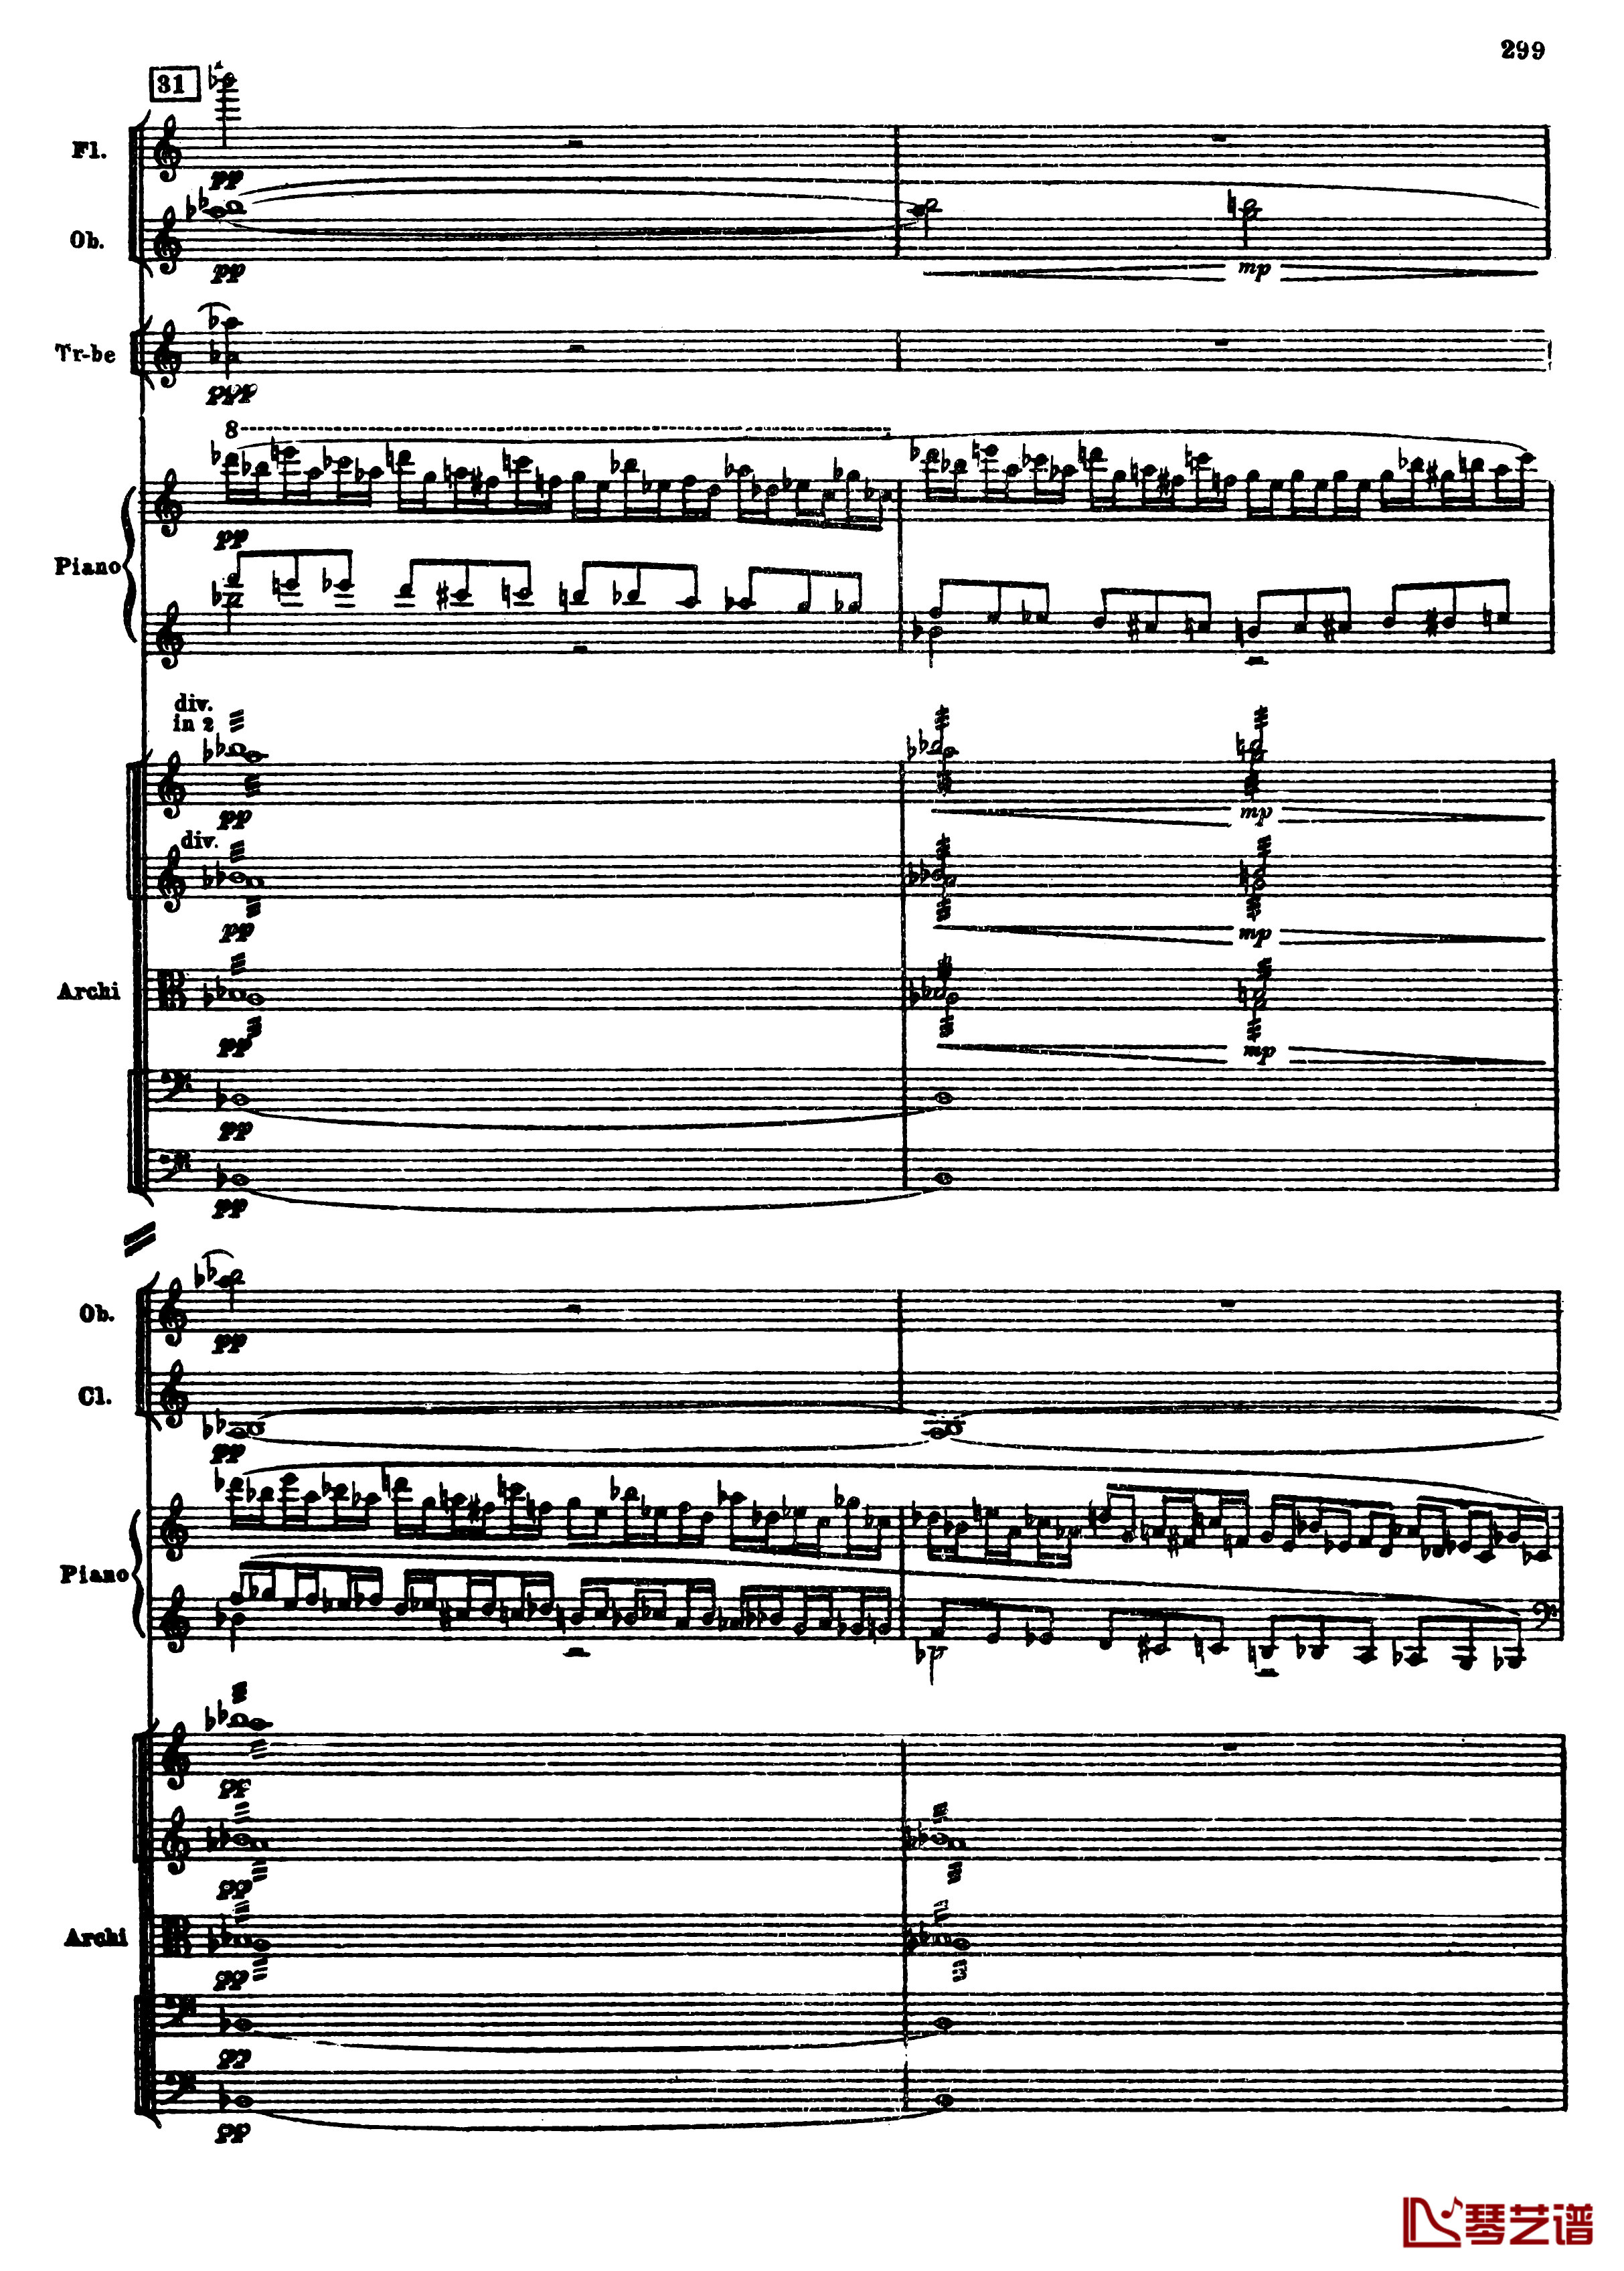 普罗科菲耶夫第三钢琴协奏曲钢琴谱-总谱-普罗科非耶夫31